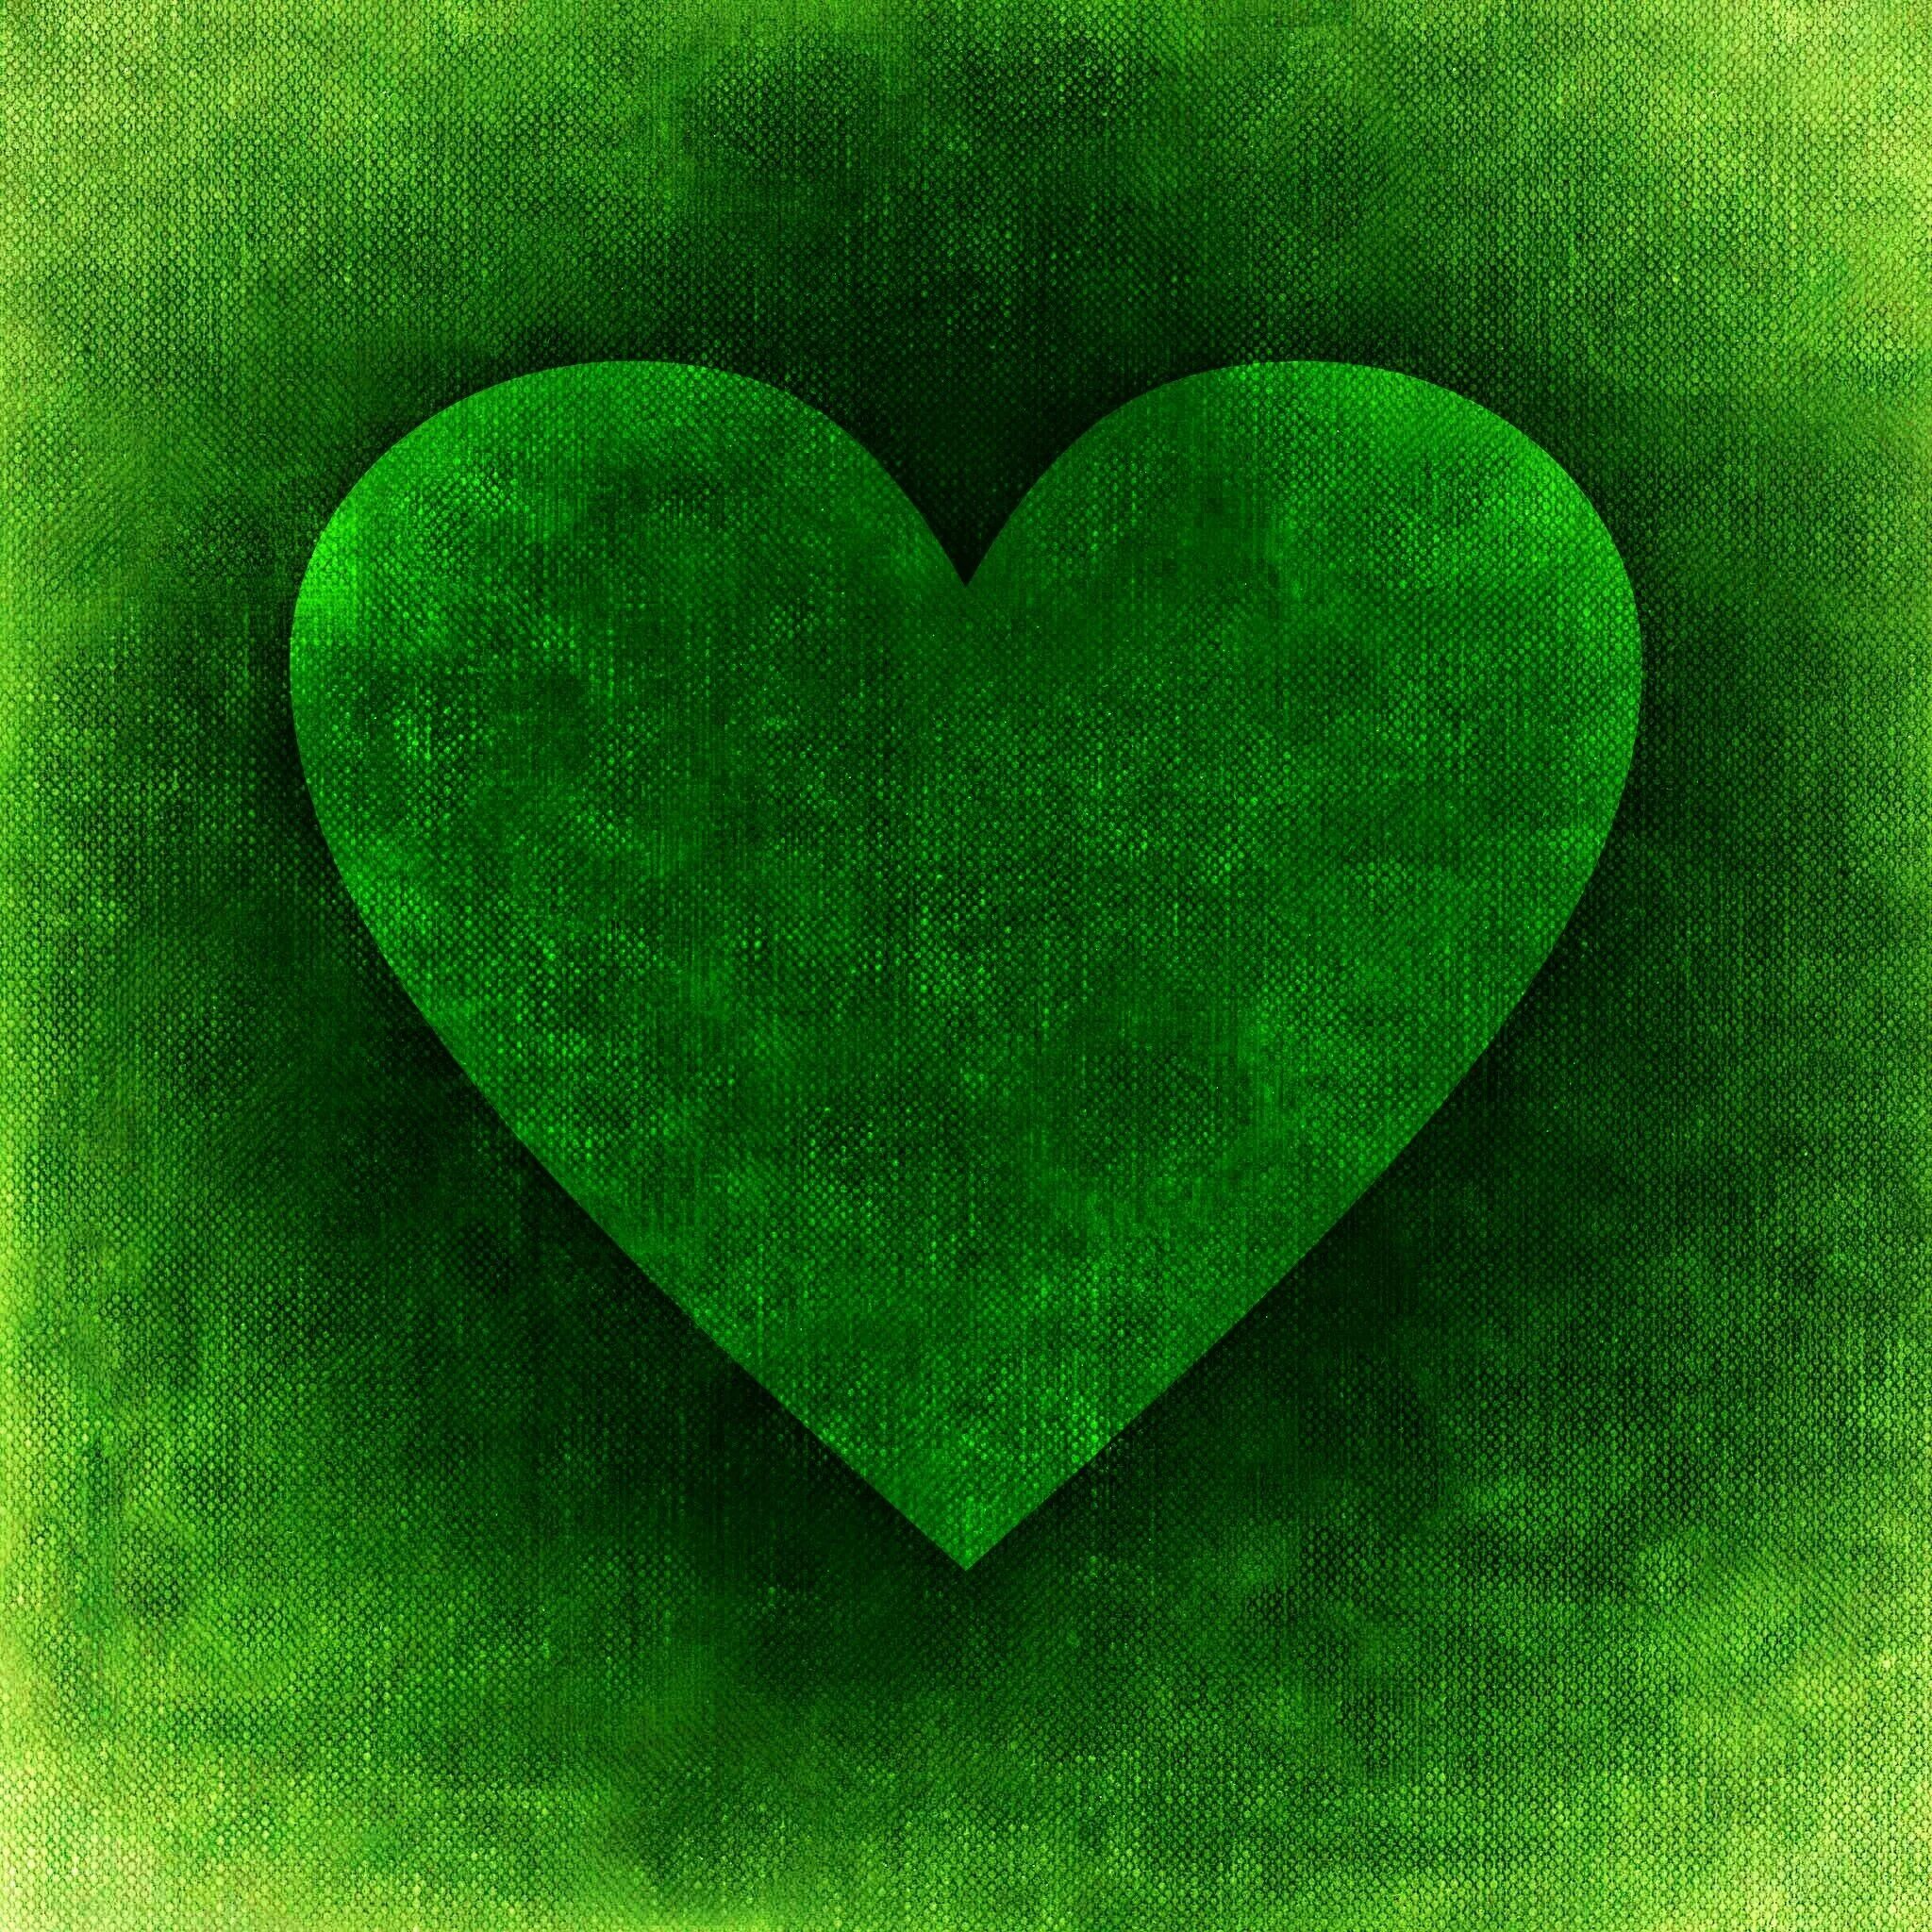 Красивые картинки в ватсапе. Сердечки (зеленые). Зеленая аватарка. Картинки на ватсап красивые. Картинки на аватарку в ватсап.